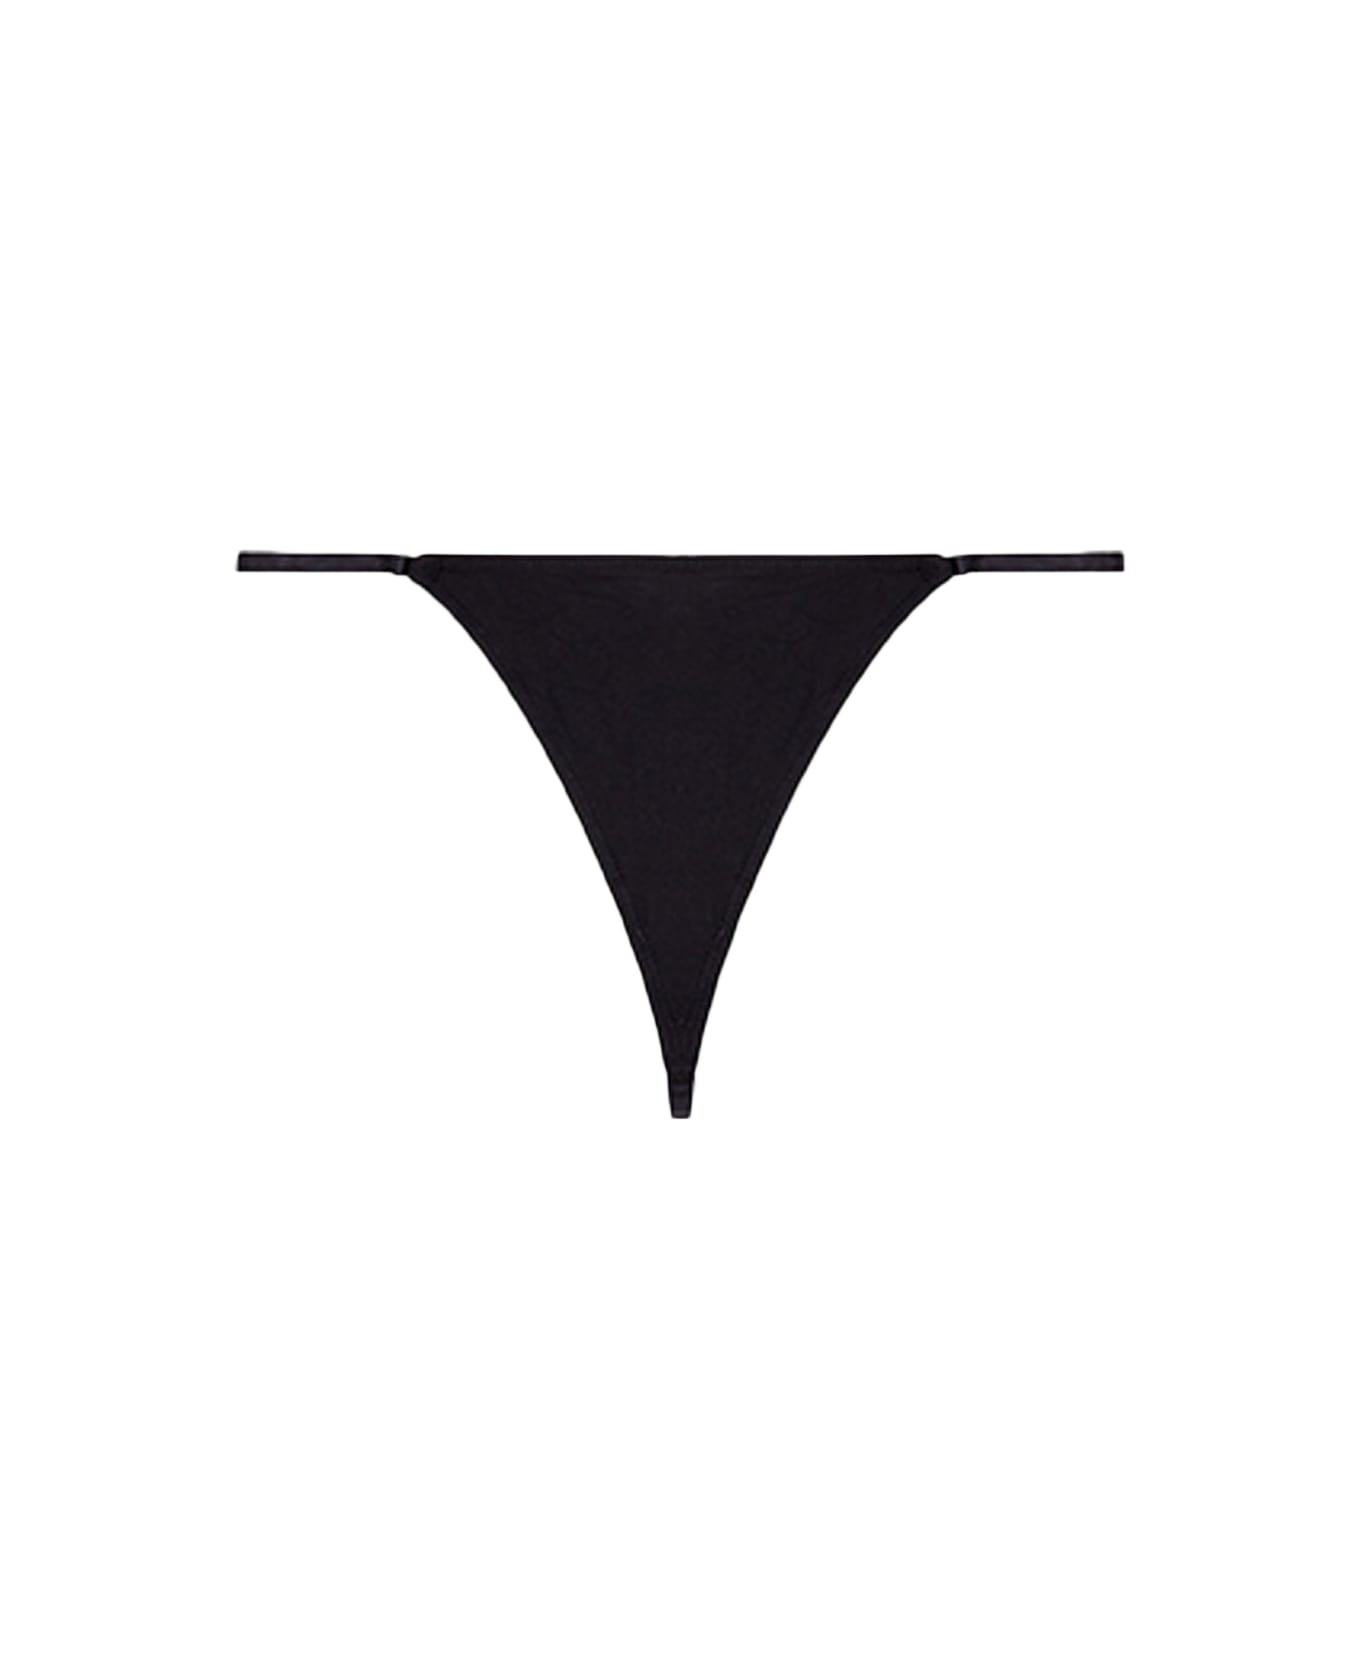 Diesel Ufst-d-string Black thong with metal Oval D logo - Ufst D-String - Nero